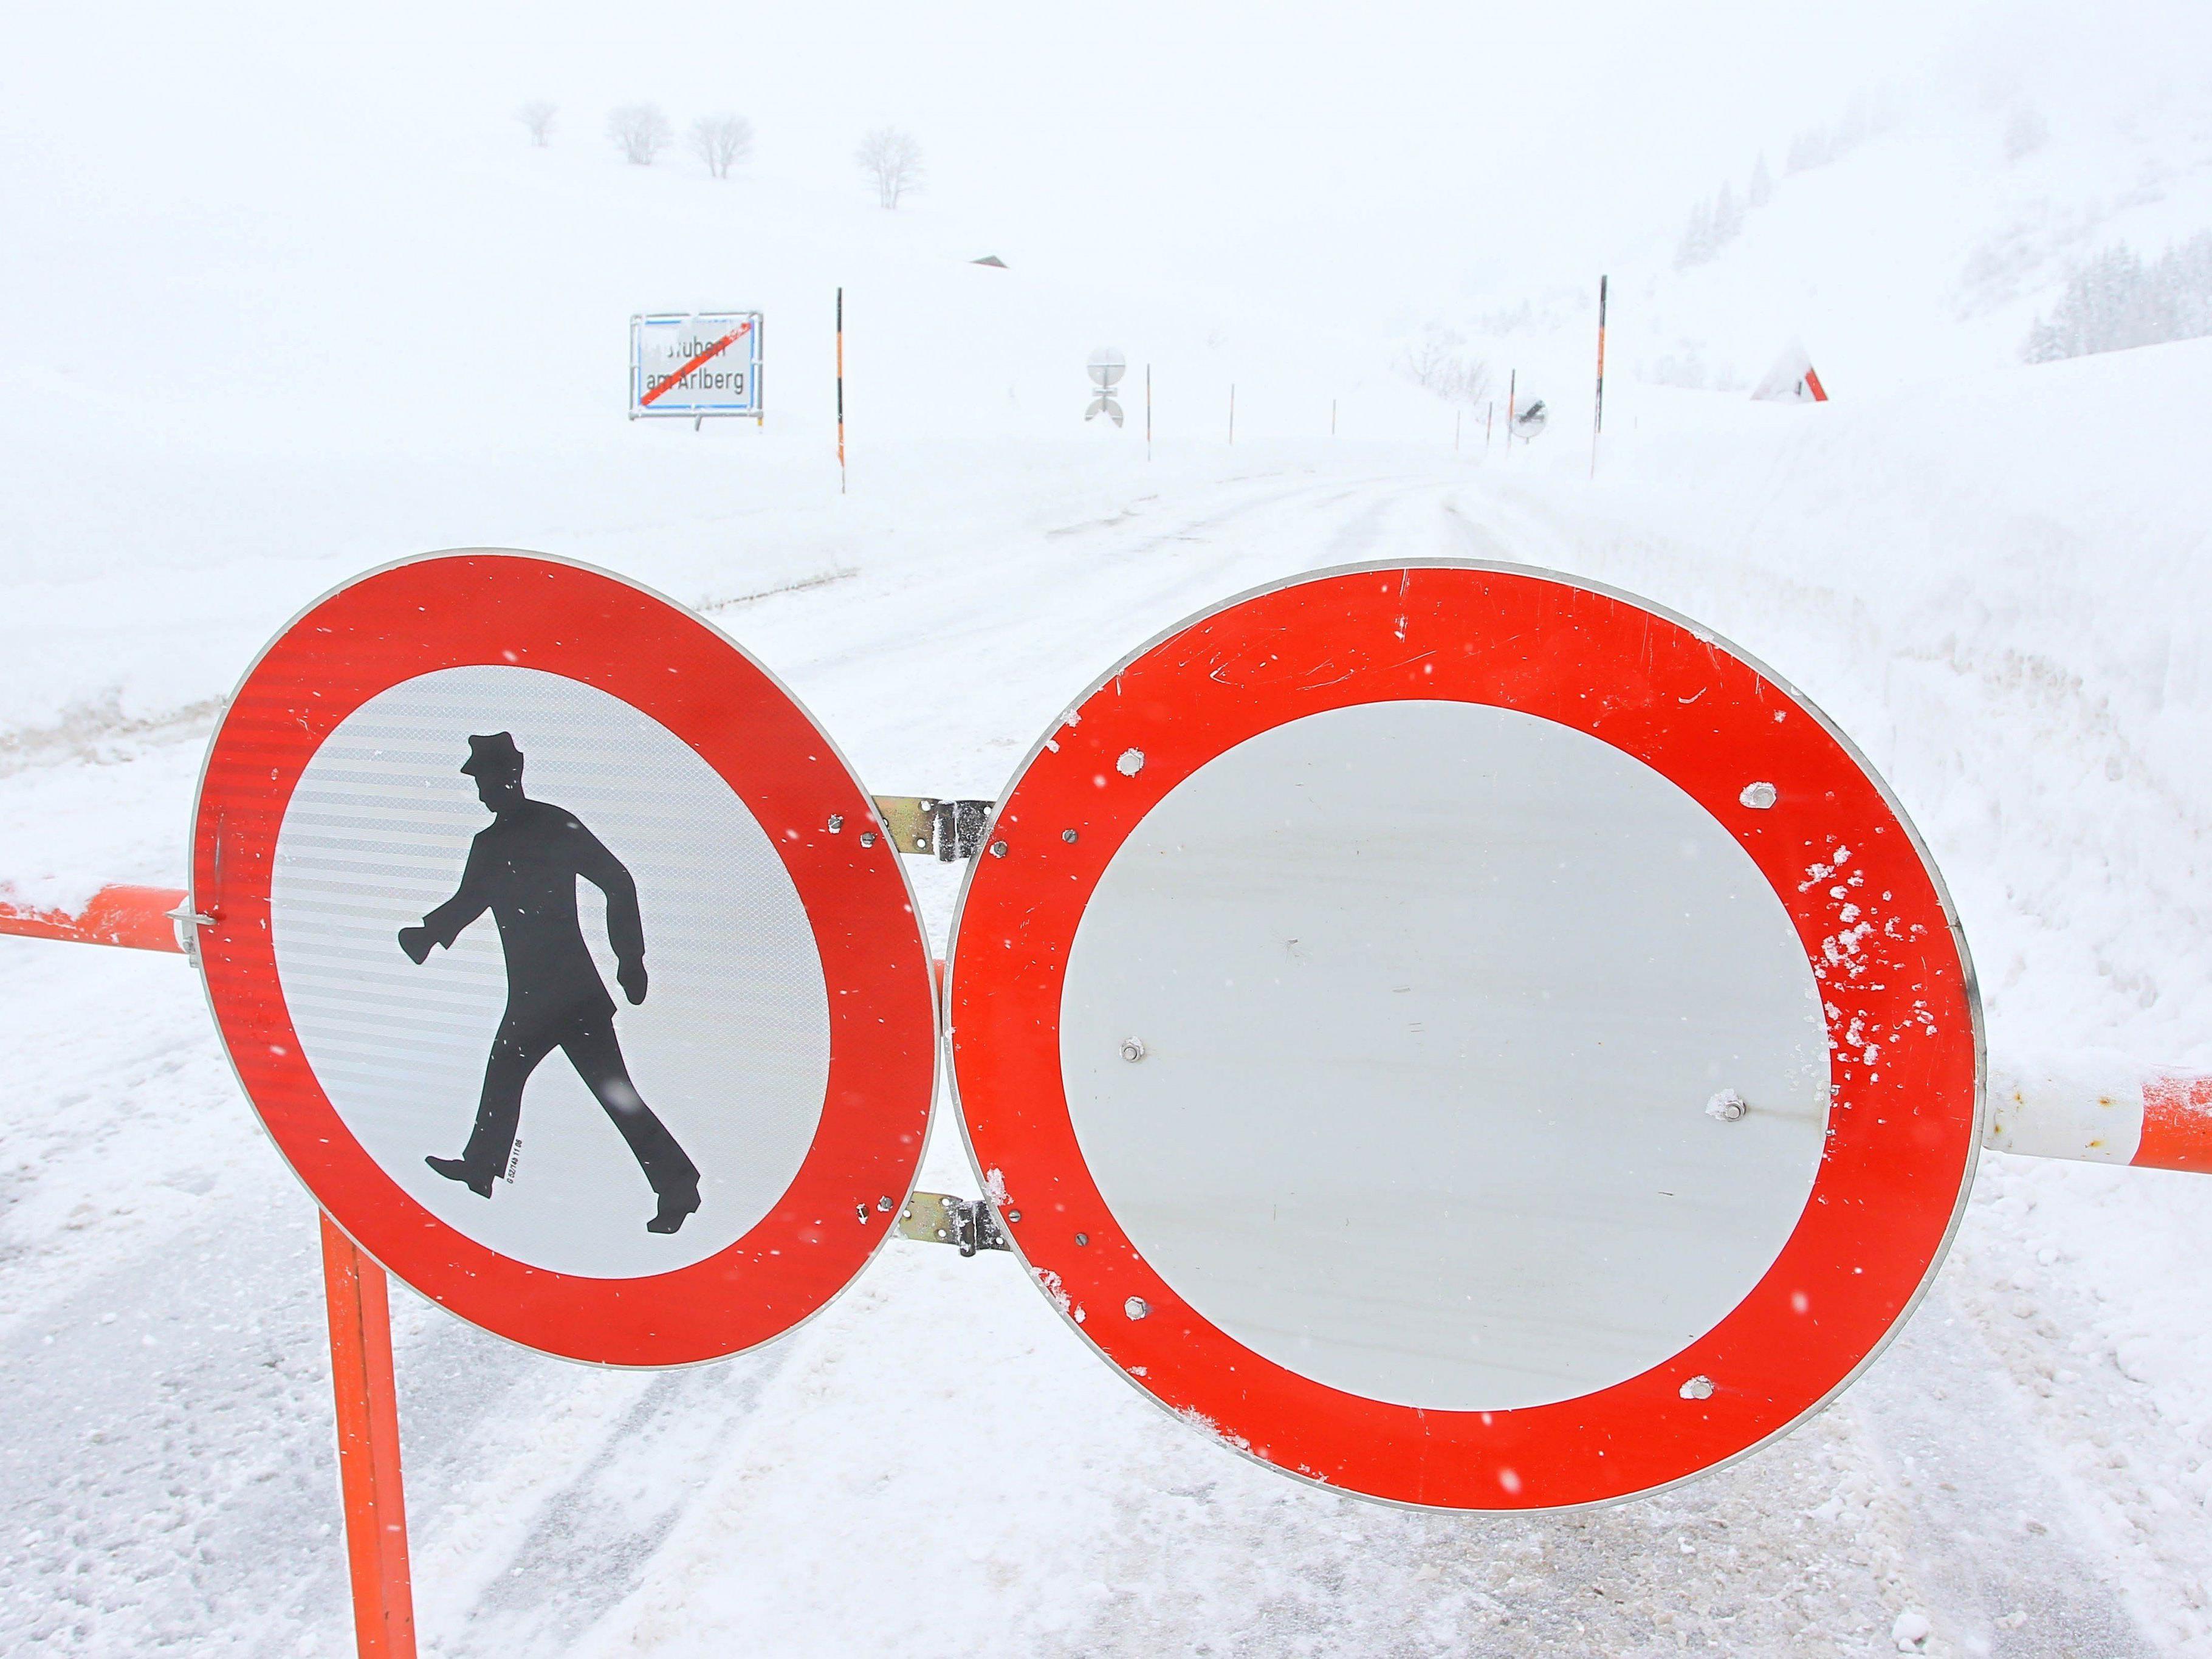 Wintersperren, wie hier bei Stuben am Arlberg, sind in Vorarlberg keine Seltenheit.